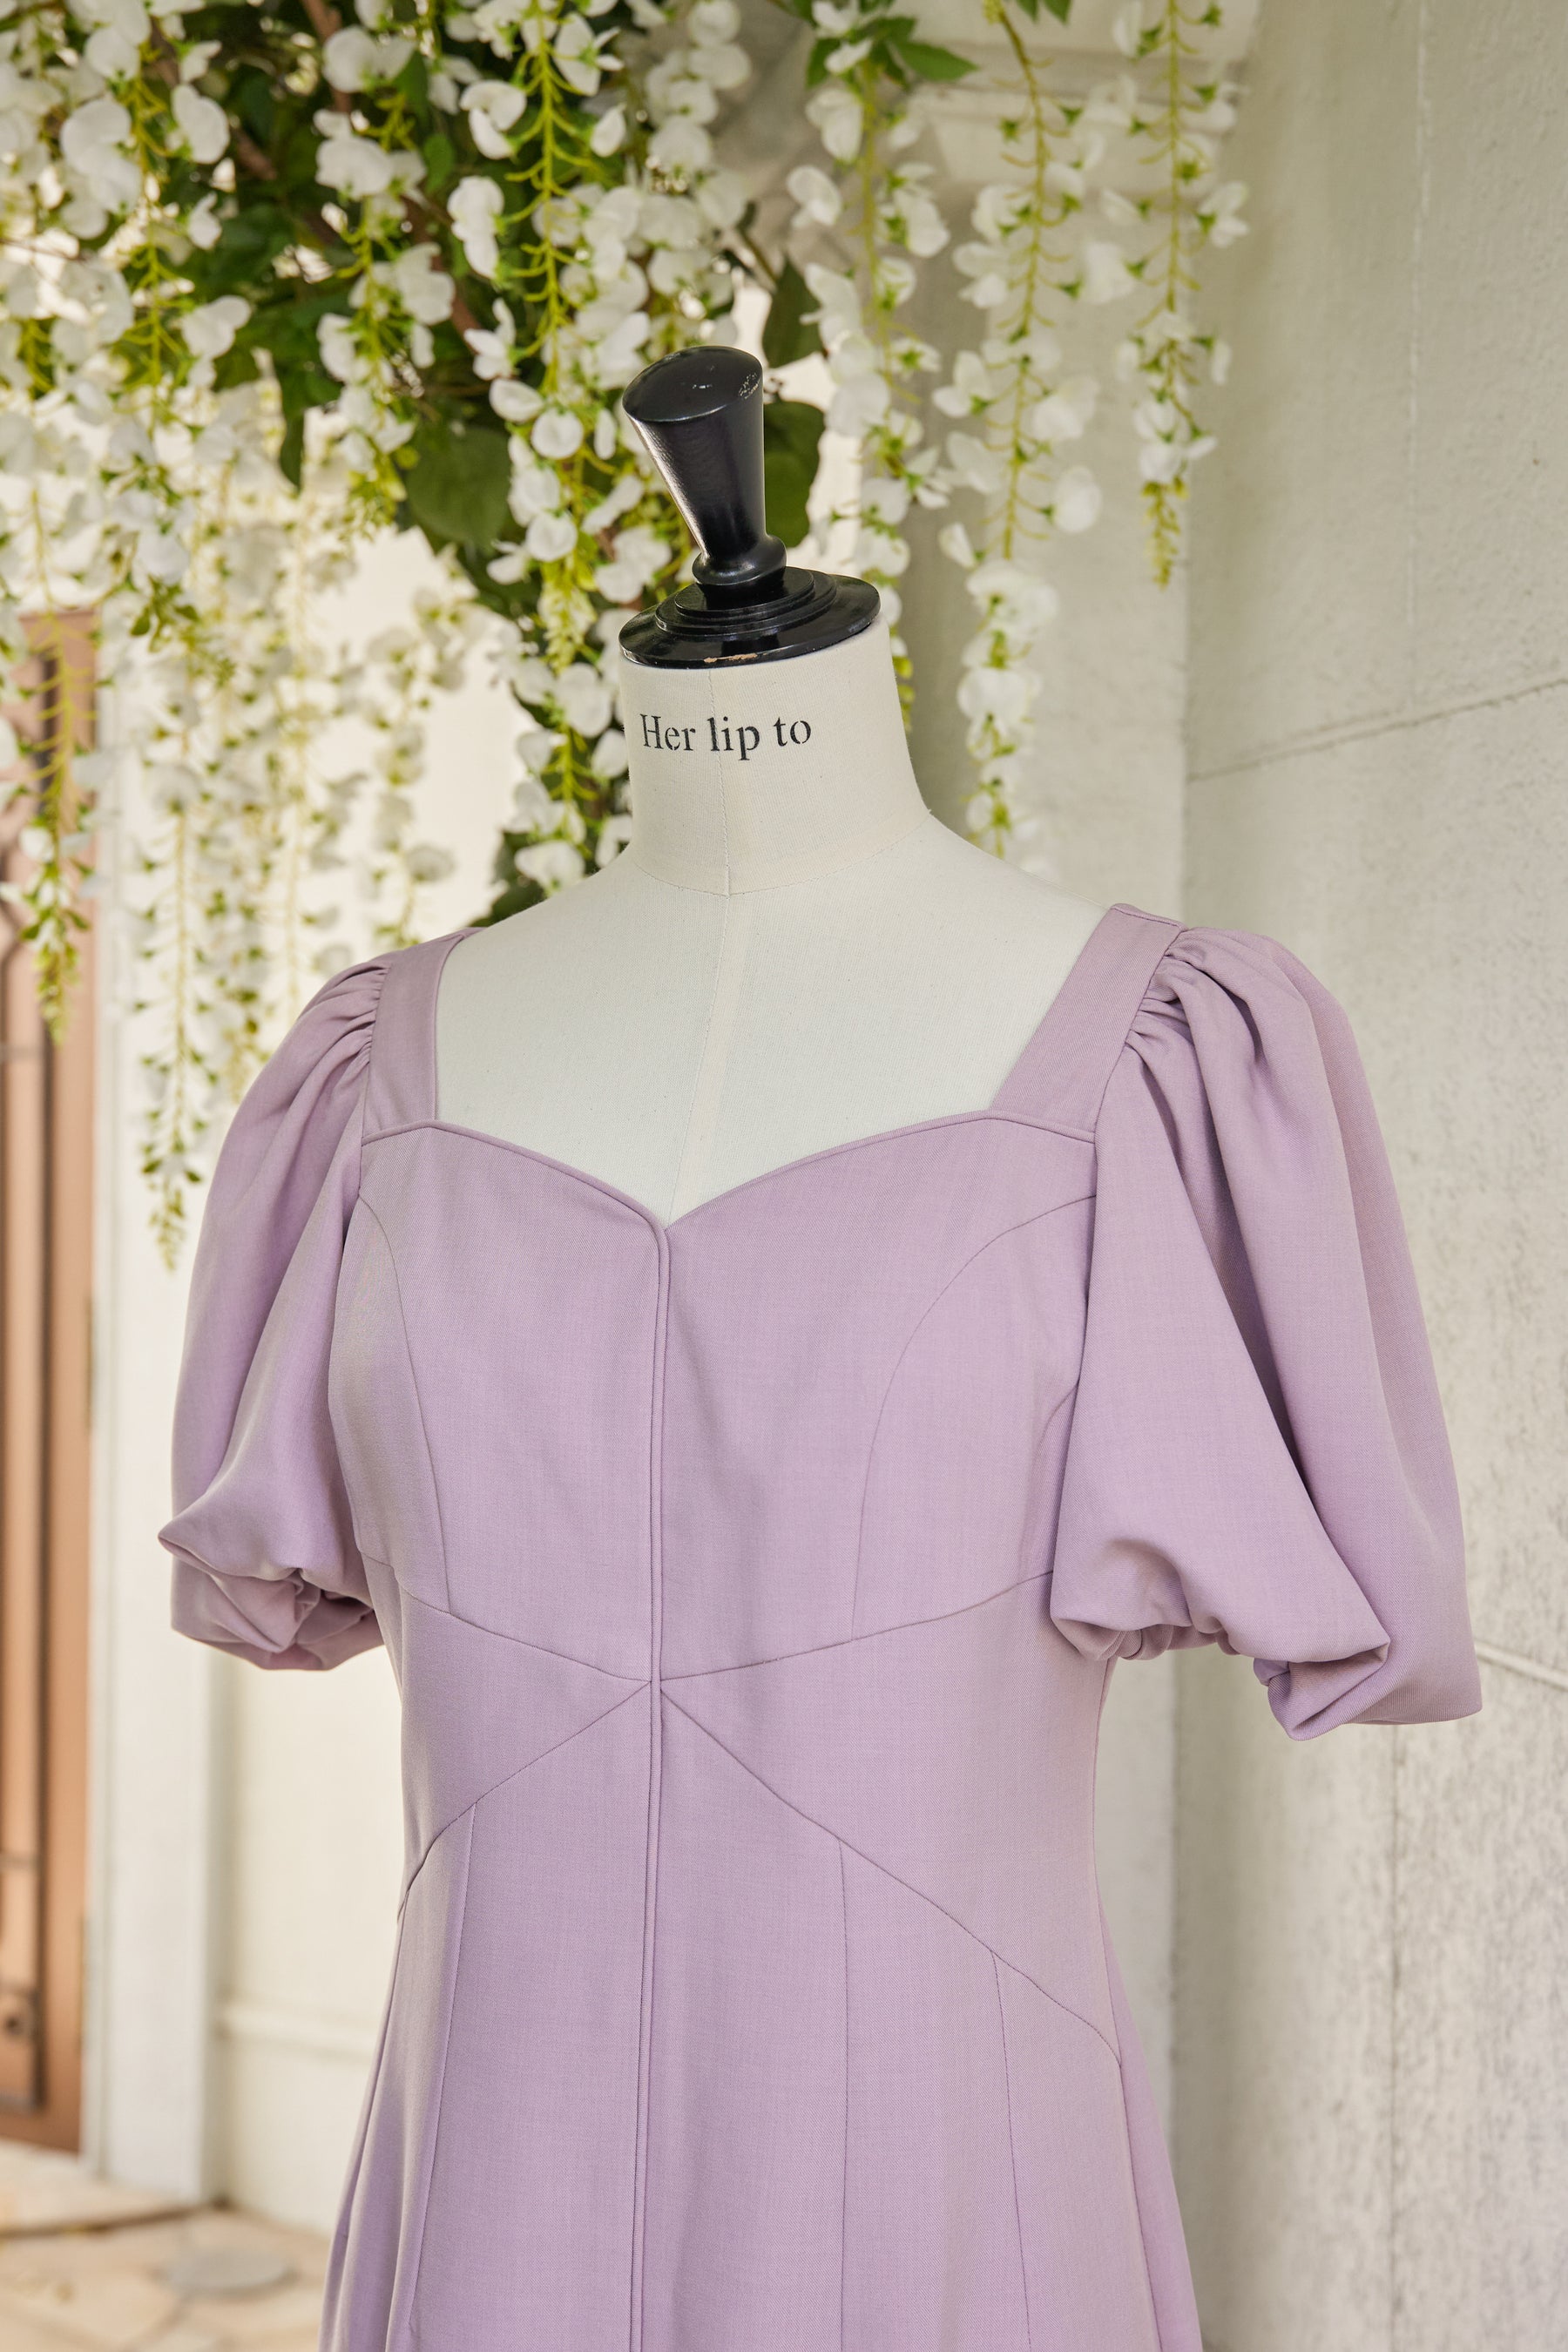 Herlipto Dreamscape Twill Dress mint S | www.innoveering.net